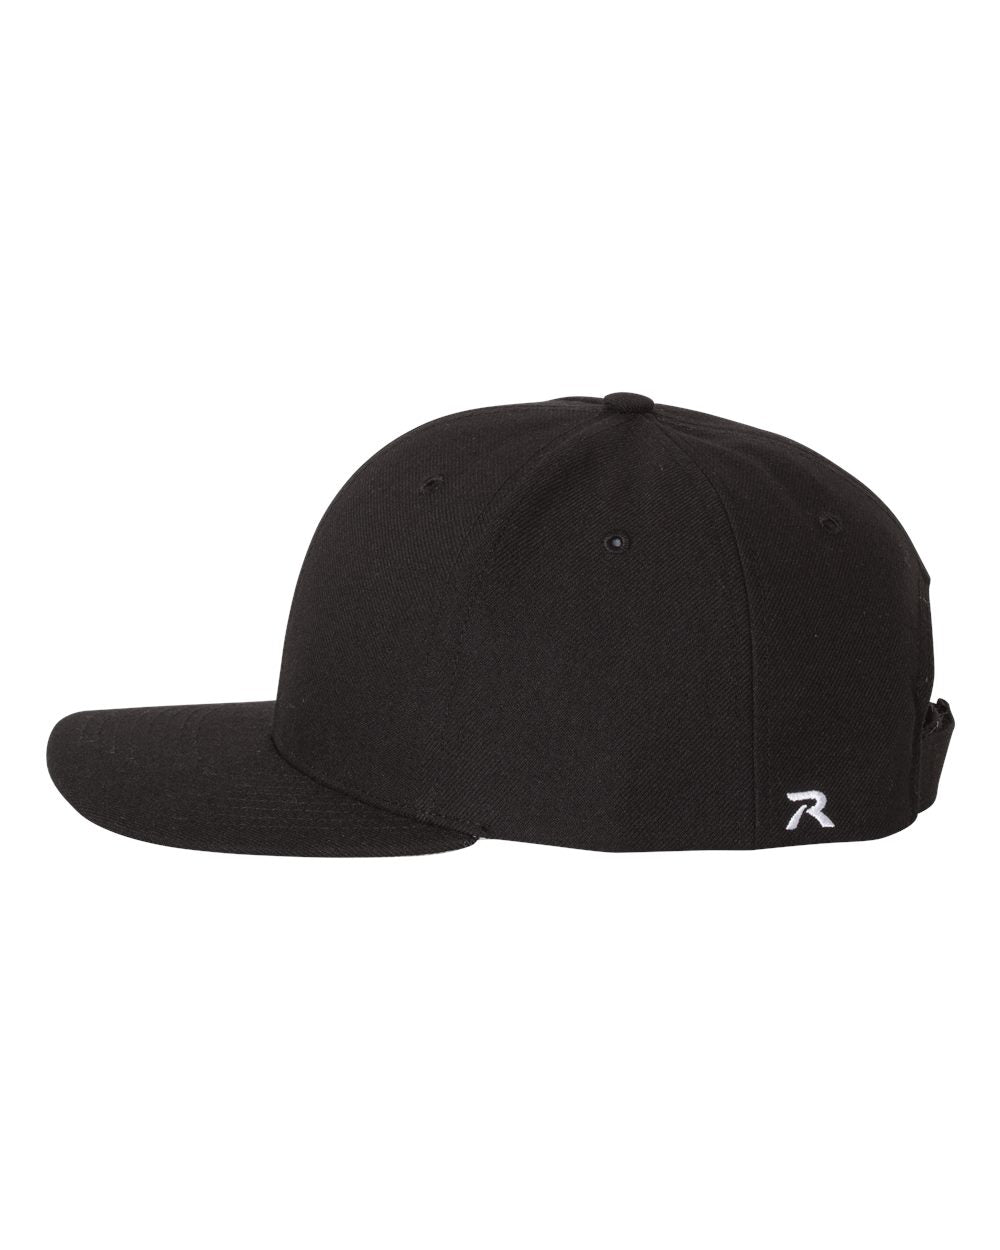 Richardson Surge Adjustable Custom Caps, Black